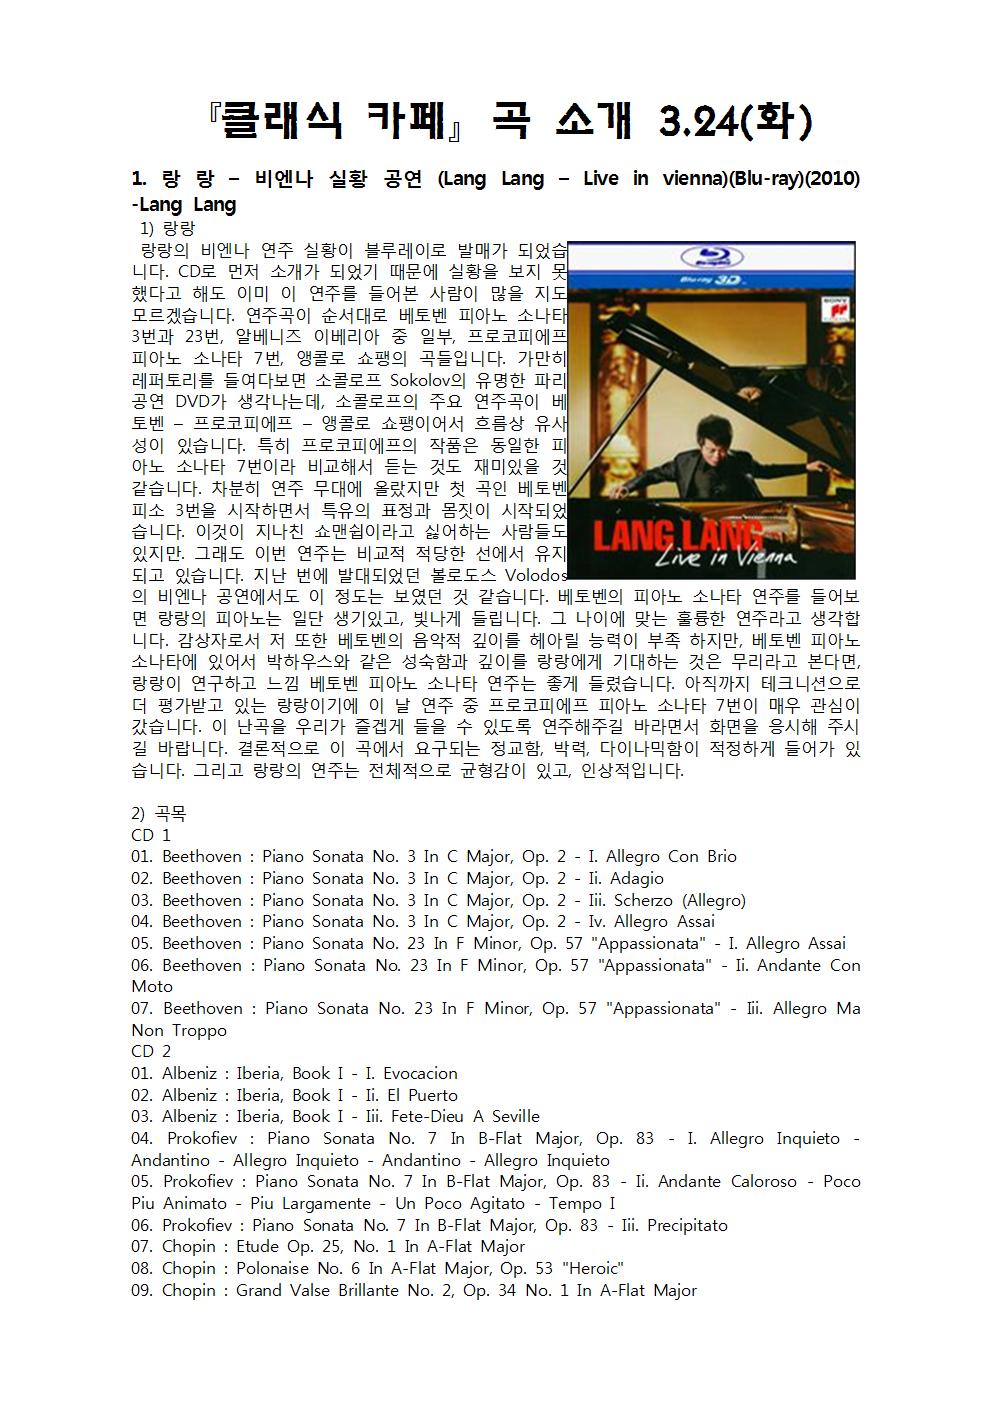 『클래식 카페』 곡 소개 3.24(화)
1. 랑 랑 - 비엔나 실황 공연 (Lang Lang - Live in vienna) (Blu-ray) (2010) -Lang Lang 1) 랑랑 랑랑의 비엔나 연주 실황이 블루레이로 발매가 되었습
C22 니다. CD로 먼저 소개가 되었기 때문에 실황을 보지 못 했다고 해도 이미 이 연주를 들어본 사람이 많을 지도 모르겠습니다. 연주곡이 순서대로 베토벤 피아노 소나태 3번과 23번, 알베니즈 이베리아 중 일부, 프로코피에프 피아노 소나타 7번, 앵콜로 쇼팽의 곡들입니다. 가만히 레퍼토리를 들여다보면 소콜로프 Sokolov의 유명한 파리 공연 DVD가 생각나는데, 소콜로프의 주요 연주곡이 베 토벤 - 프로코피에프 - 앵콜로 쇼팽이어서 흐름상 유새 성이 있습니다. 특히 프로코피에프의 작품은 동일한 피 아노 소나타 7번이라 비교해서 듣는 것도 재미있을 것 같습니다. 차분히 연주 무대에 올랐지만 첫 곡인 베토벤 피소 3번을 시작하면서 특유의 표정과 몸짓이 시작되었 습니다. 이것이 지나친 쇼맨쉽이라고 싫어하는 사람들도 있지만. 그래도 이번 연주는 비교적 적당한 선에서 유지되고 있습니다. 지난 번에 발대되었던 볼로도스 의 비엔나 공연에서도 이 정도는 보였던 것 같습니다. 베토벤의 피아노 소나타 연주를 들어보 면 랑랑의 피아노는 일단 생기있고, 빛나게 들립니다. 그 나이에 맞는 훌륭한 연주라고 생각합 니다. 감상자로서 저 또한 베토벤의 음악적 깊이를 헤아릴 능력이 부족 하지만, 베토벤 피아노 소나타에 있어서 박하우스와 같은 성숙함과 깊이를 랑랑에게 기대하는 것은 무리라고 본다면, 랑랑이 연구하고 느낌 베토벤 피아노 소나타 연주는 좋게 들렸습니다. 아직까지 테크니션으로 더 평가받고 있는 랑랑이기에 이 날 연주 중 프로코피에프 피아노 소나타 7번이 매우 관심이 갔습니다. 이 난곡을 우리가 즐겁게 들을 수 있도록 연주해주길 바라면서 화면을 응시해 주시 길 바랍니다. 결론적으로 이 곡에서 요구되는 정교함, 박력, 다이나믹함이 적정하게 들어가 있 습니다. 그리고 랑랑의 연주는 전체적으로 균형감이 있고, 인상적입니다.
2) 곡목 CD 1 01. Beethoven : Piano Sonata No. 3 in C Major, Op. 2 - I. Allegro Con Brio 02. Beethoven : Piano Sonata No. 3 In C Major, Op. 2 - Ii. Adagio 03. Beethoven : Piano Sonata No. 3 In C Major, Op. 2 - Iii. Scherzo (Allegro) 04. Beethoven : Piano Sonata No. 3 In C Major, Op. 2 - Iv. Allegro Assai 05. Beethoven: Piano Sonata No. 23 In F Minor, Op. 57 "Appassionata" - I. Allegro Assai 06. Beethoven : Piano Sonata No. 23 In F Minor, Op. 57 "Appassionata" - Ii. Andante Con Moto 07. Beethoven : Piano Sonata No. 23 In F Minor, Op. 57 "Appassionata" - Nii. Allegro Ma Non Troppo CD 2 01. Albeniz : Iberia, Book I - I. Evocacion 02. Albeniz : Iberia, Book I - Ii. El Puerto 03. Albeniz : Iberia, Book I - lii. Fete-Dieu A Seville 04. Prokofiev : Piano Sonata No. 7 In B-Flat Major, Op. 83 - I. Allegro Inquieto - Andantino - Allegro Inquieto - Andantino - Allegro Inquieto 05. Prokofiev: Piano Sonata No. 7 In B-Flat Major, Op. 83 - II. Andante Caloroso - Poco Piu Animato - Piu Largamente - Un Poco Agitato - Tempo I 06. Prokofiev: Piano Sonata No. 7 In B-Flat Major, Op. 83 - lii. Precipitato 07. Chopin : Etude Op. 25, No. 1 In A-Flat Major 08. Chopin : Polonaise No. 6 In A-Flat Major, Op. 53 "Heroic" 09. Chopin : Grand Valse Brillante No. 2, Op. 34 No. 1 In A-Flat Major